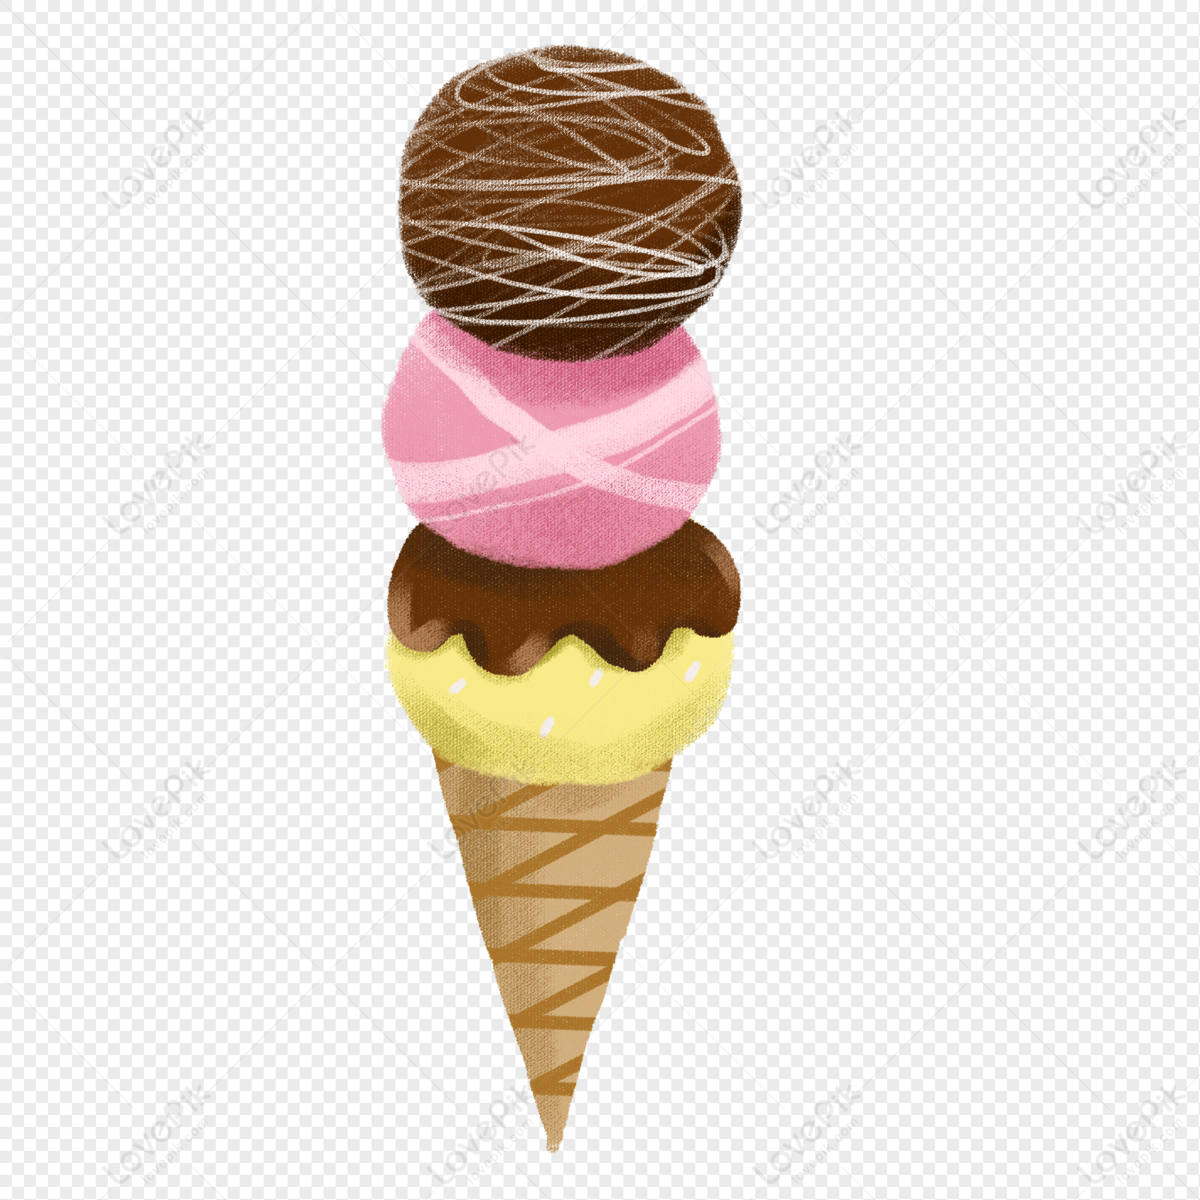 Illustrator Of Snack Ice Cream, Delicious Ice Cream, Cartoon ...